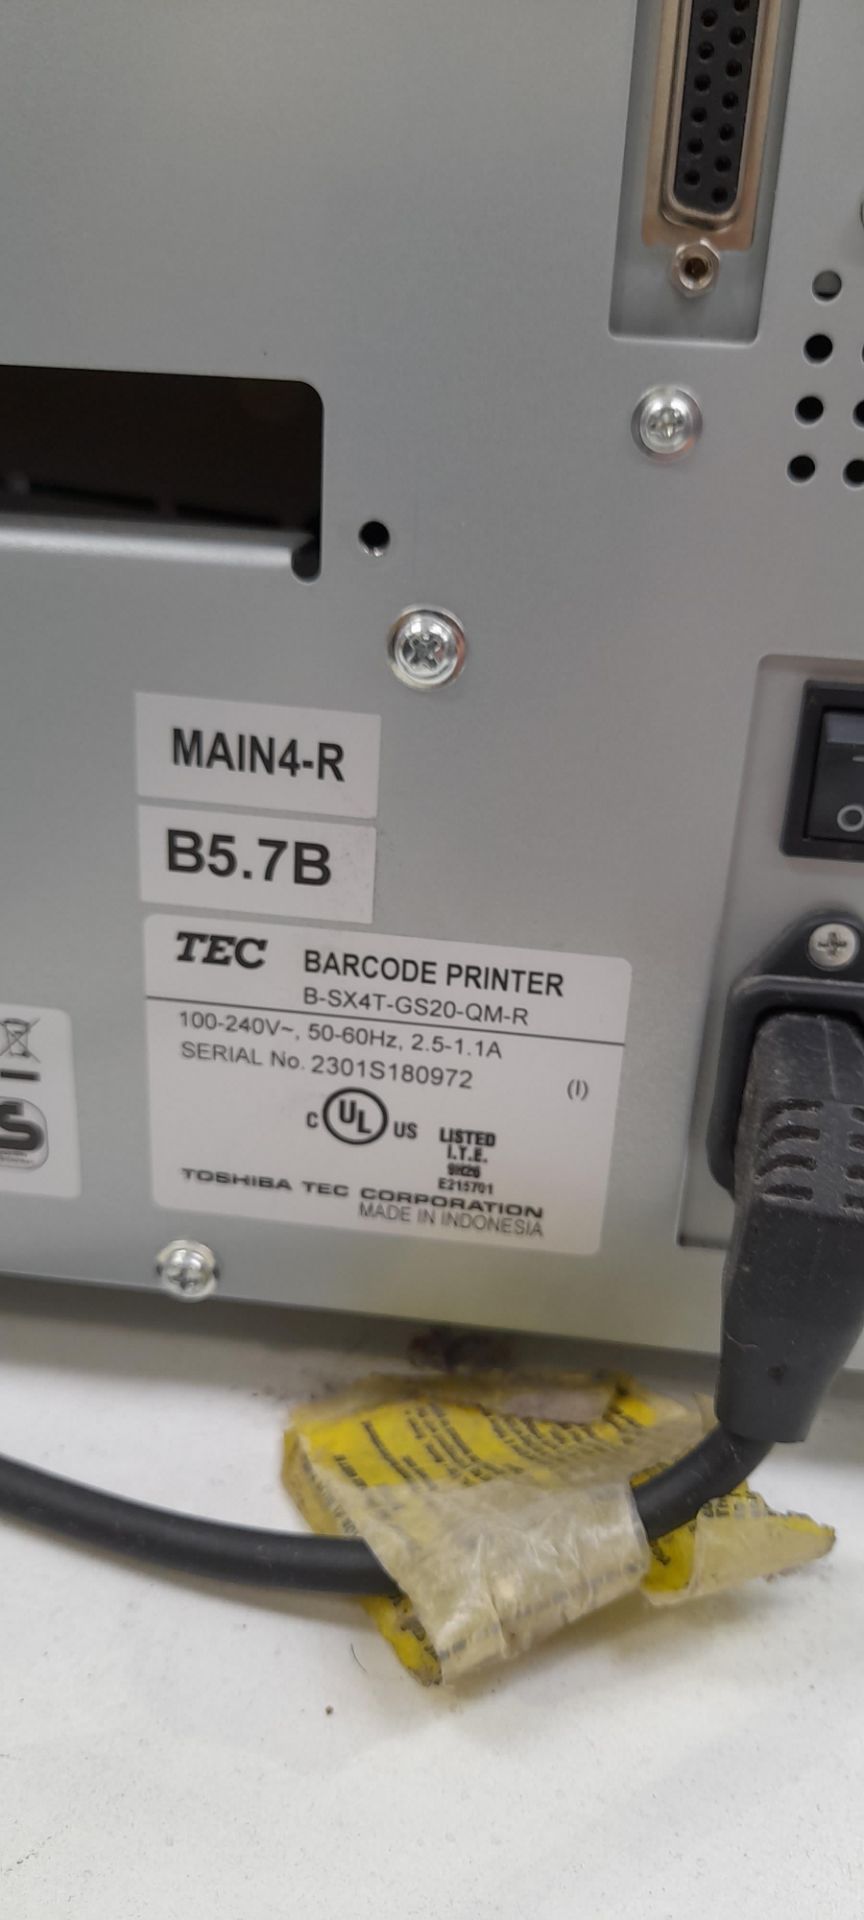 Toshiba TEC B-SX4T-GS20-QM-R Barcode printer - Image 3 of 4